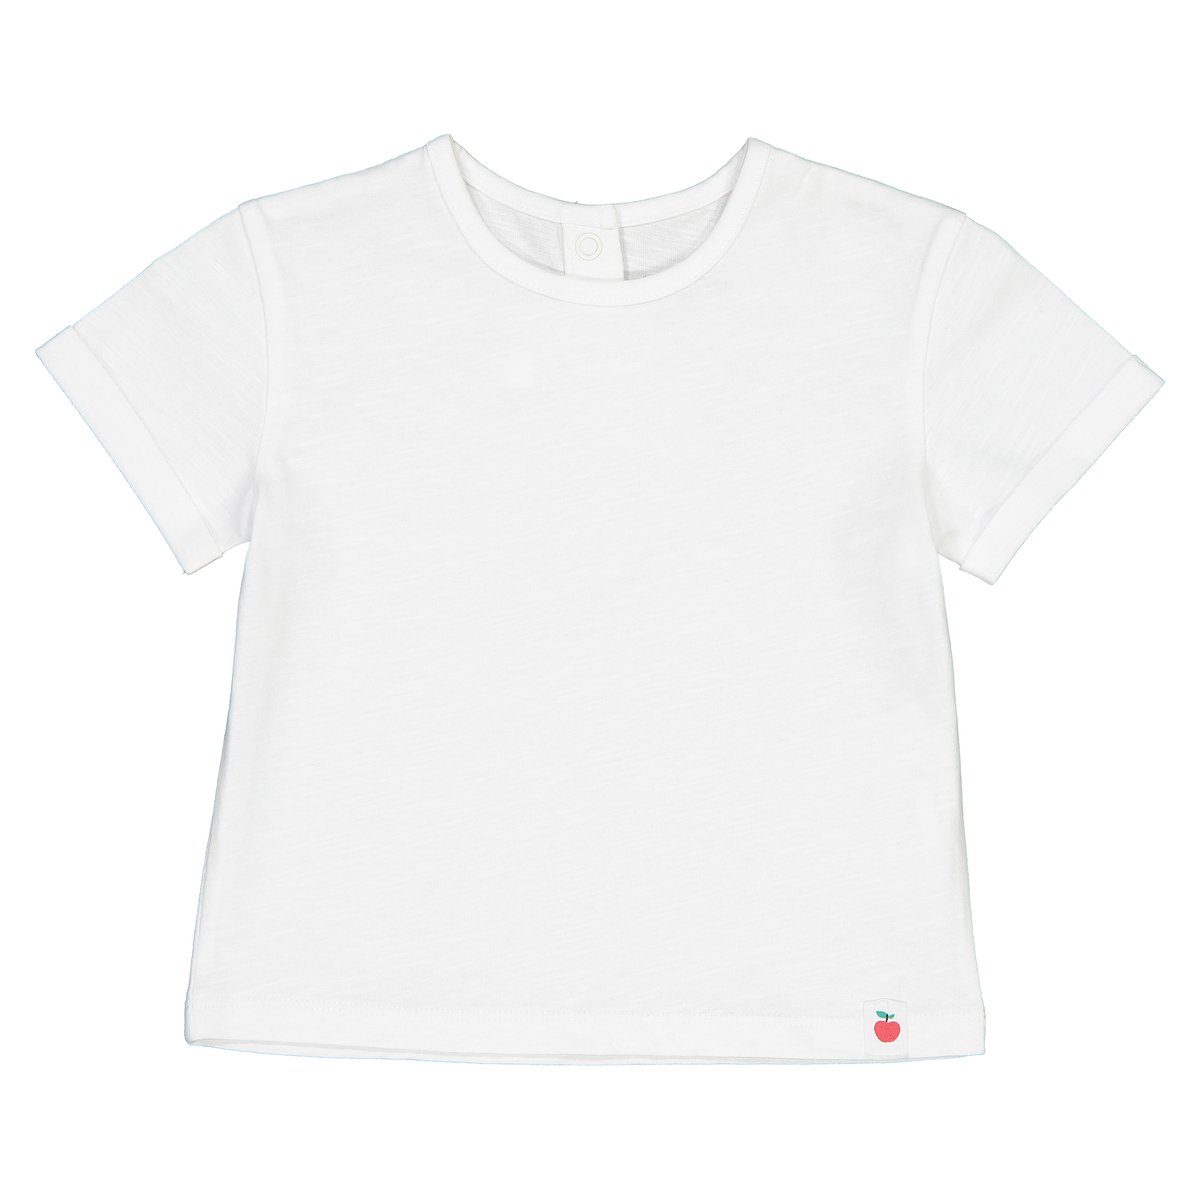 Collections T-shirt de gola redonda, 1 mês-4 anos